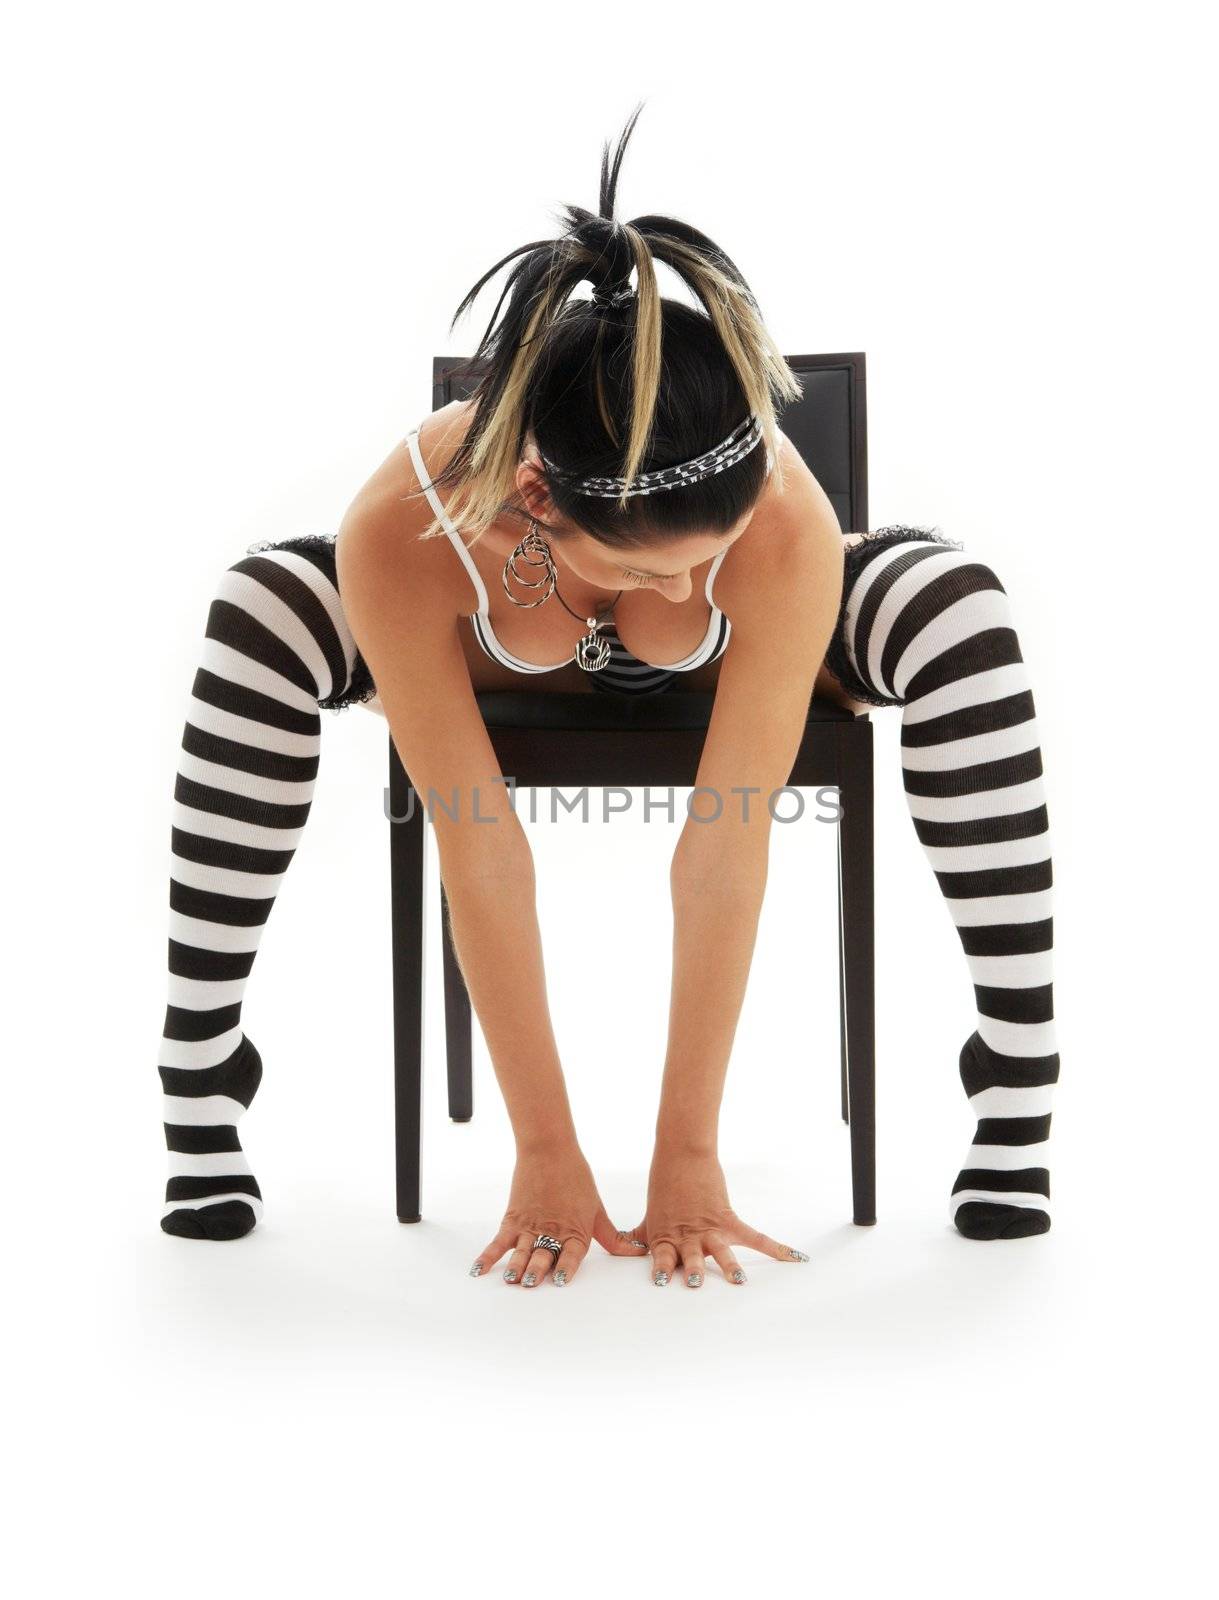 striped underwear girl in chair by dolgachov